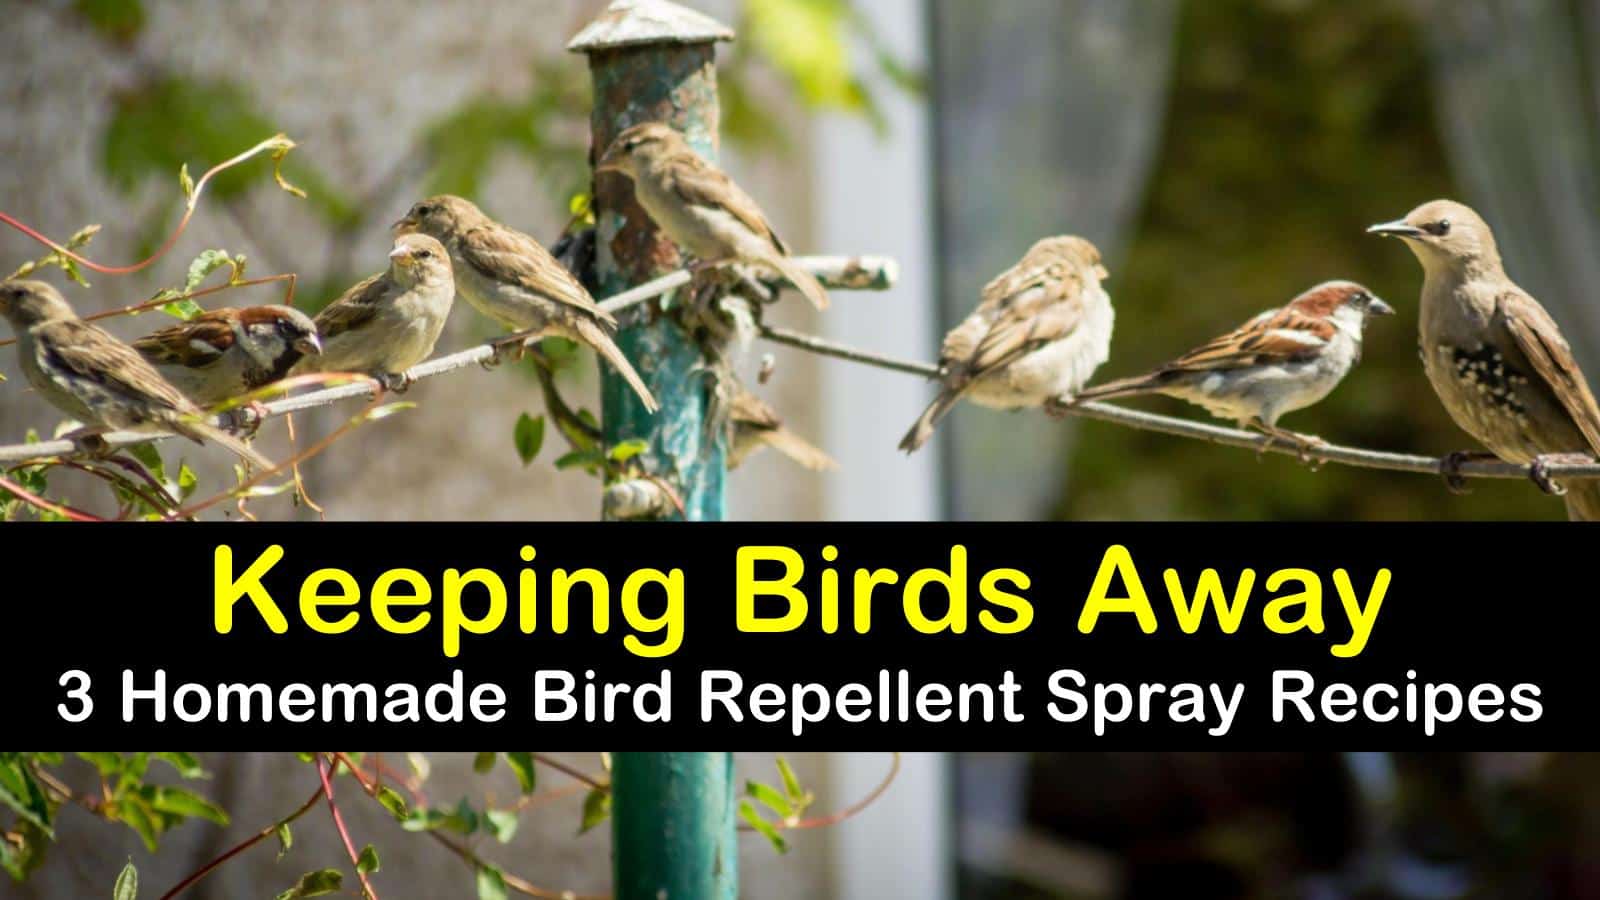 homemade bird repellent spray titleimg1